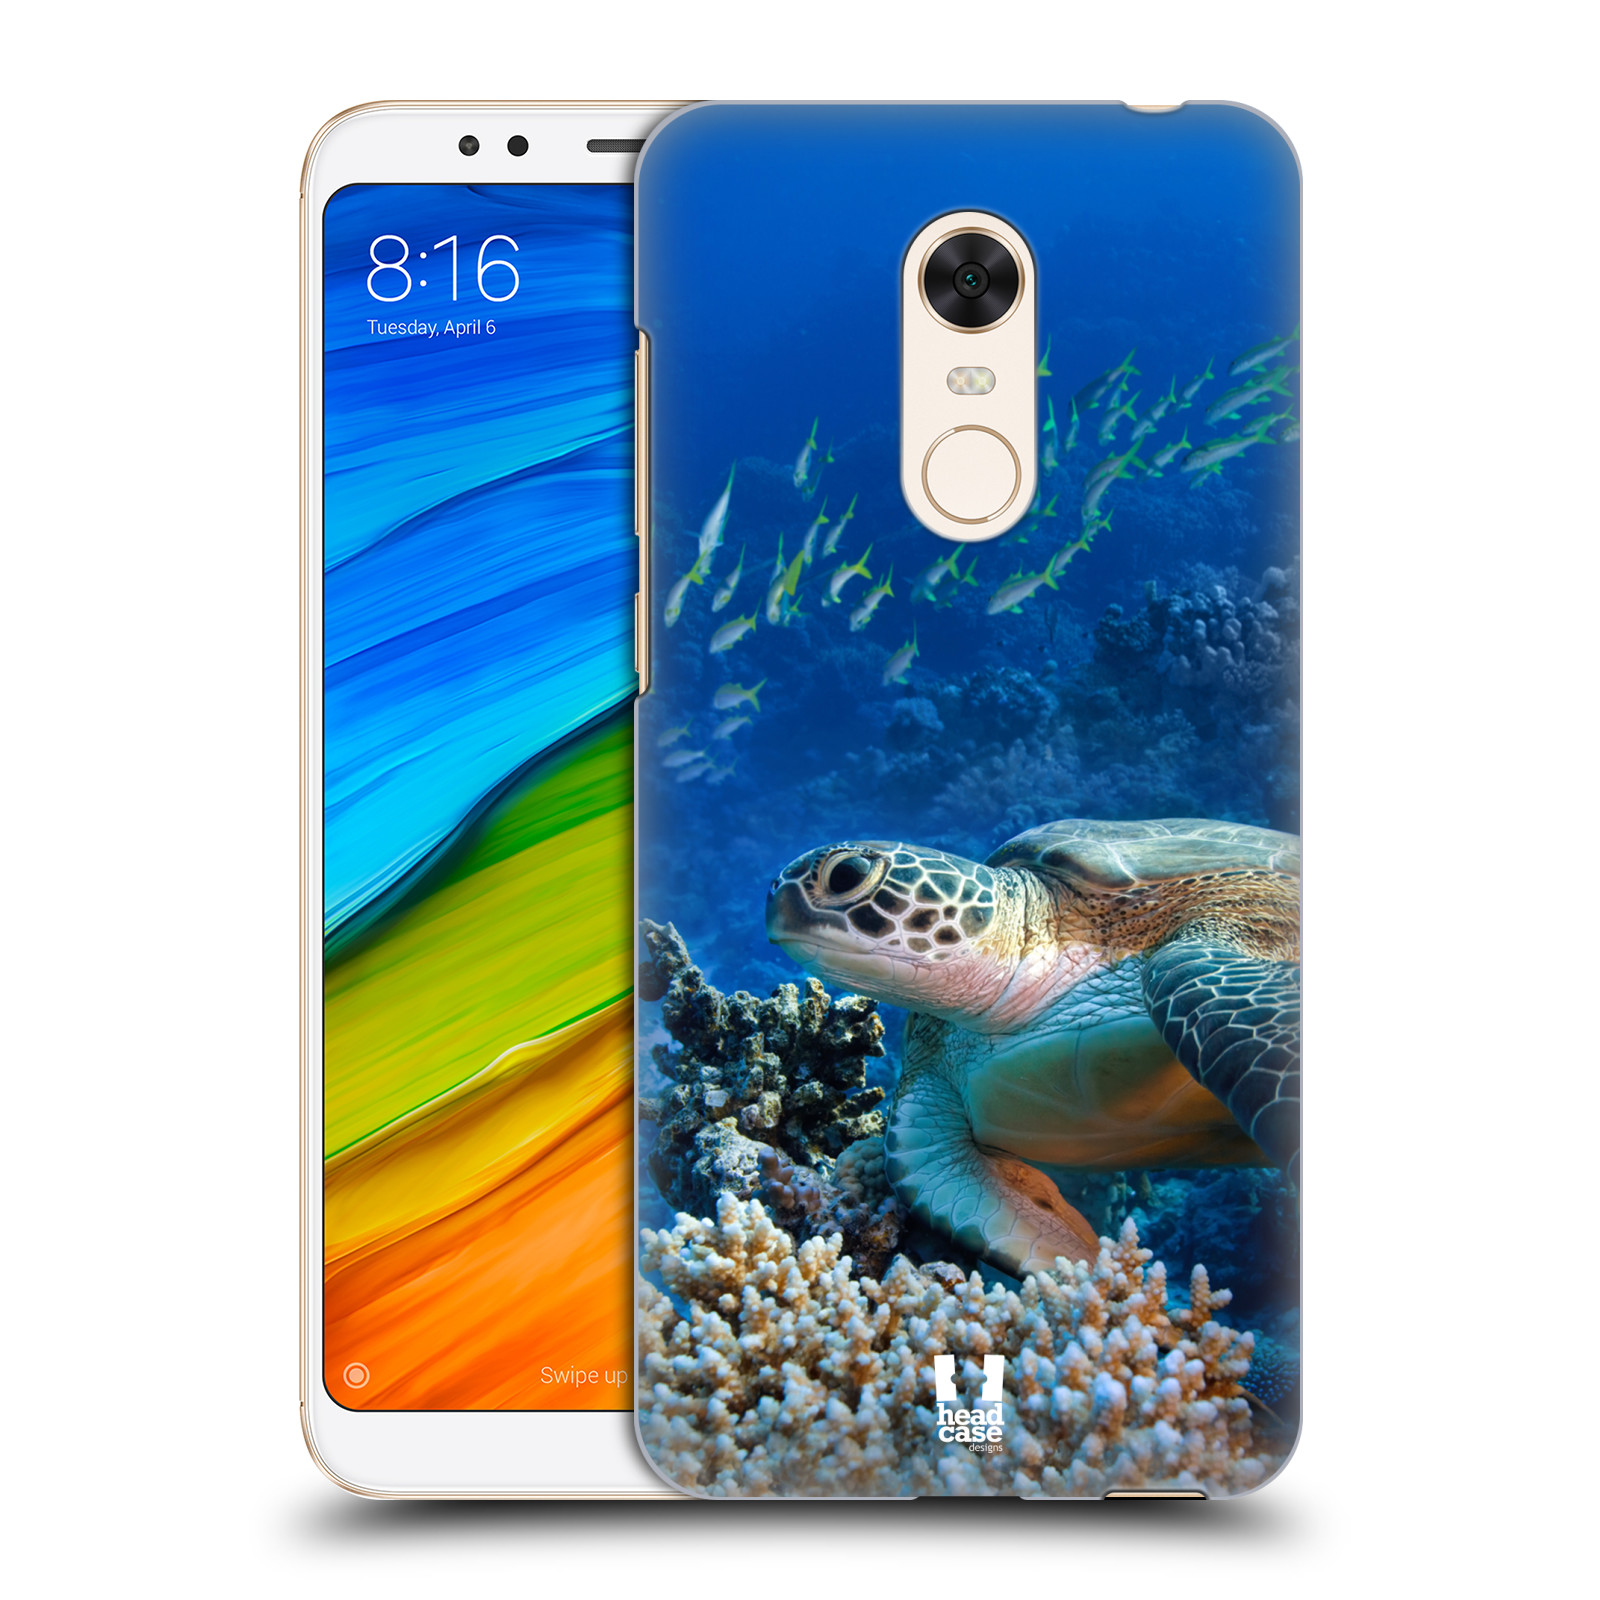 HEAD CASE plastový obal na mobil Xiaomi Redmi 5 PLUS vzor Divočina, Divoký život a zvířata foto MOŘSKÁ ŽELVA MODRÁ PODMOŘSKÁ HLADINA